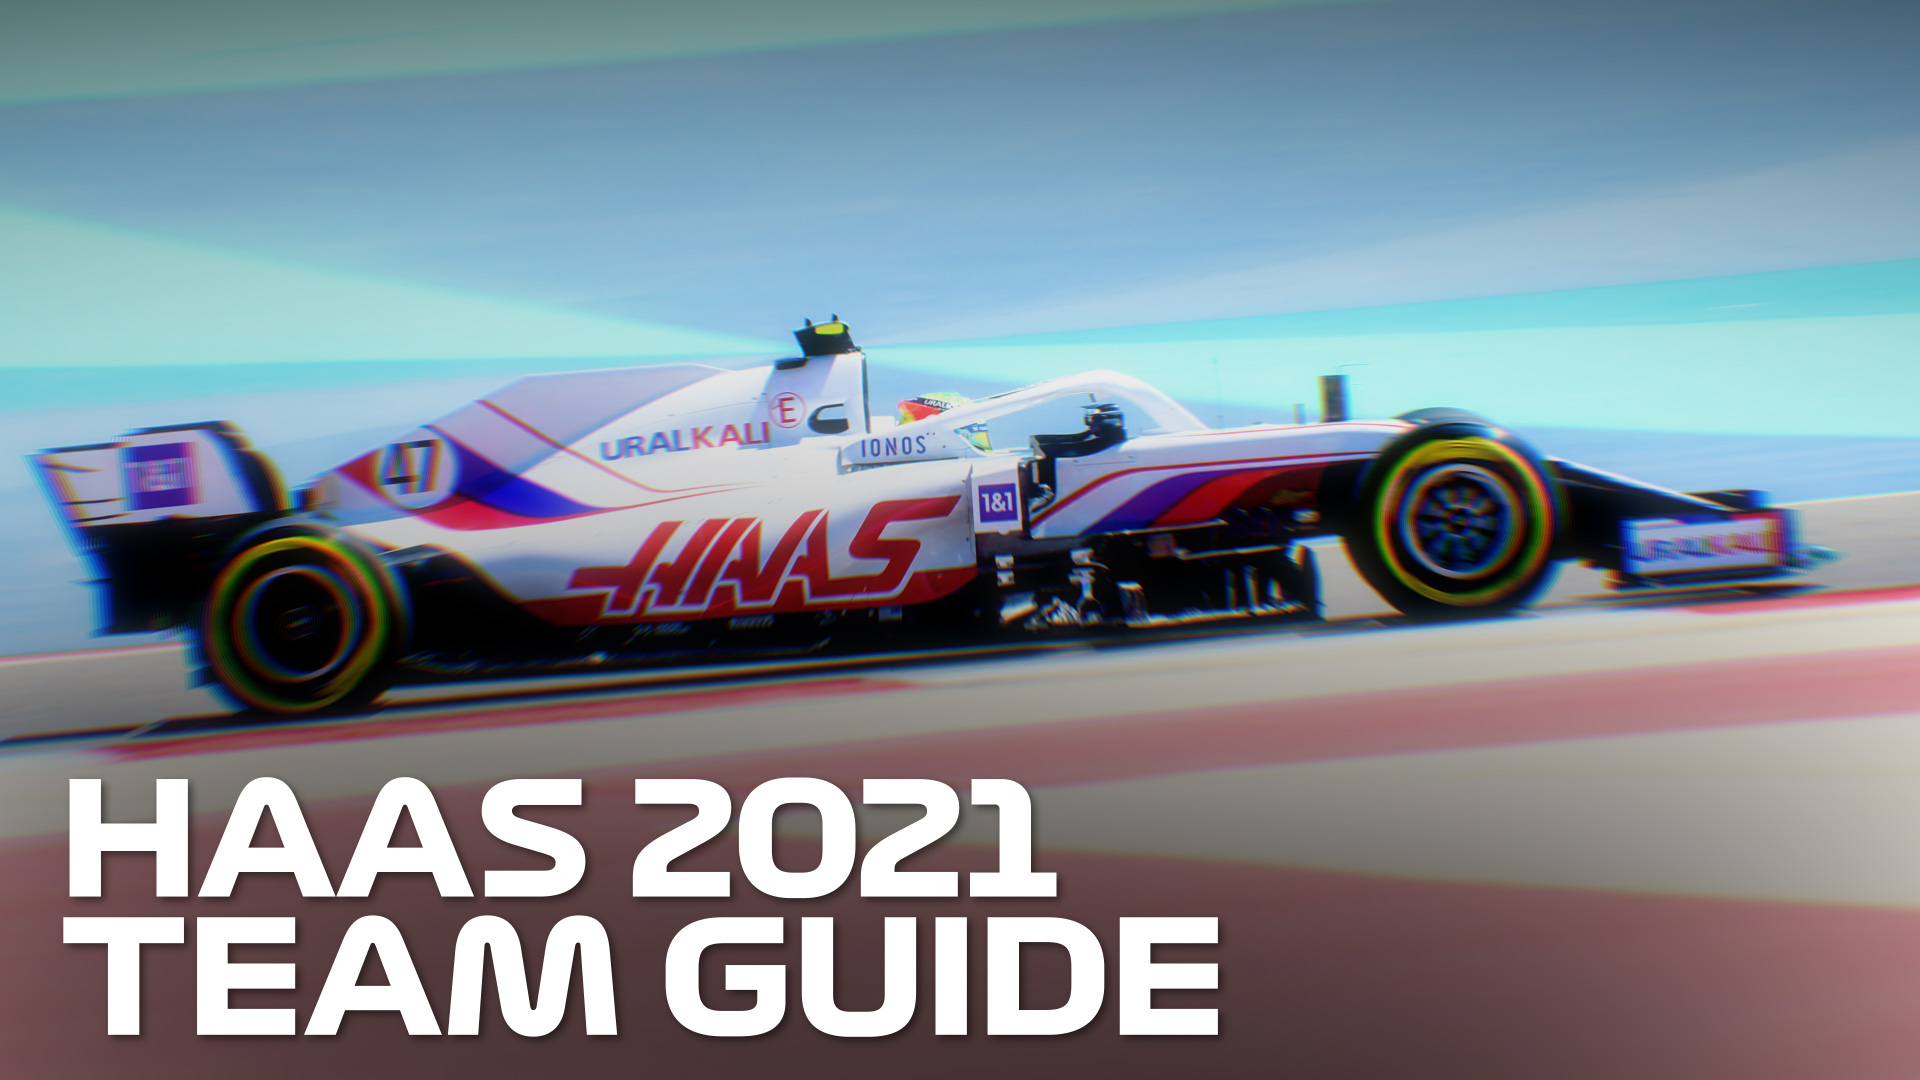 VISTA PREVIA DE LA TEMPORADA: Las esperanzas y temores de todos los fanáticos de Haas en 2021